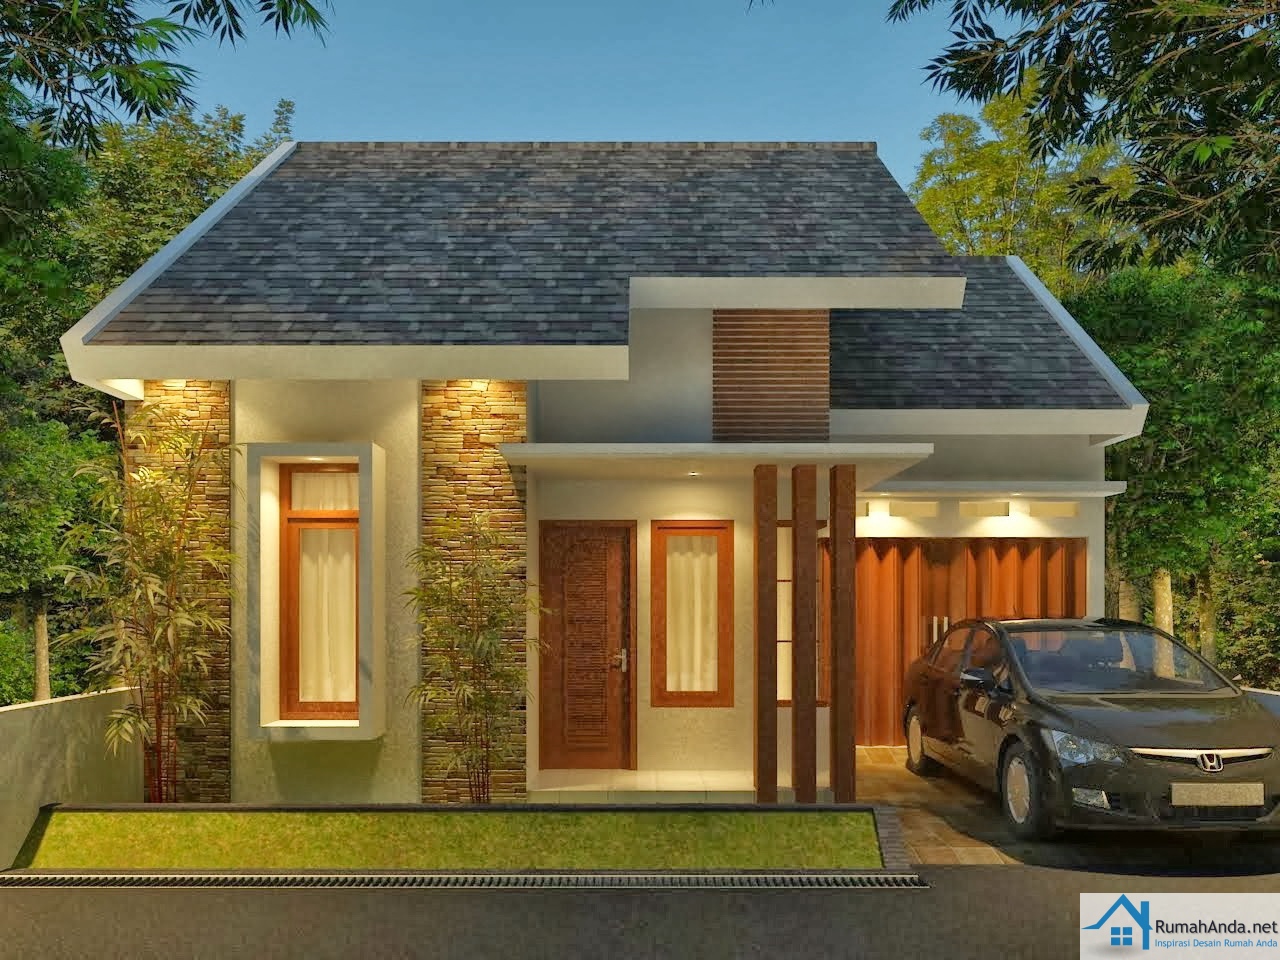  Desain  Rumah  Minimalis  Modern  1 dan 2 Lantai 2019 Contoh Gambar Rumah 